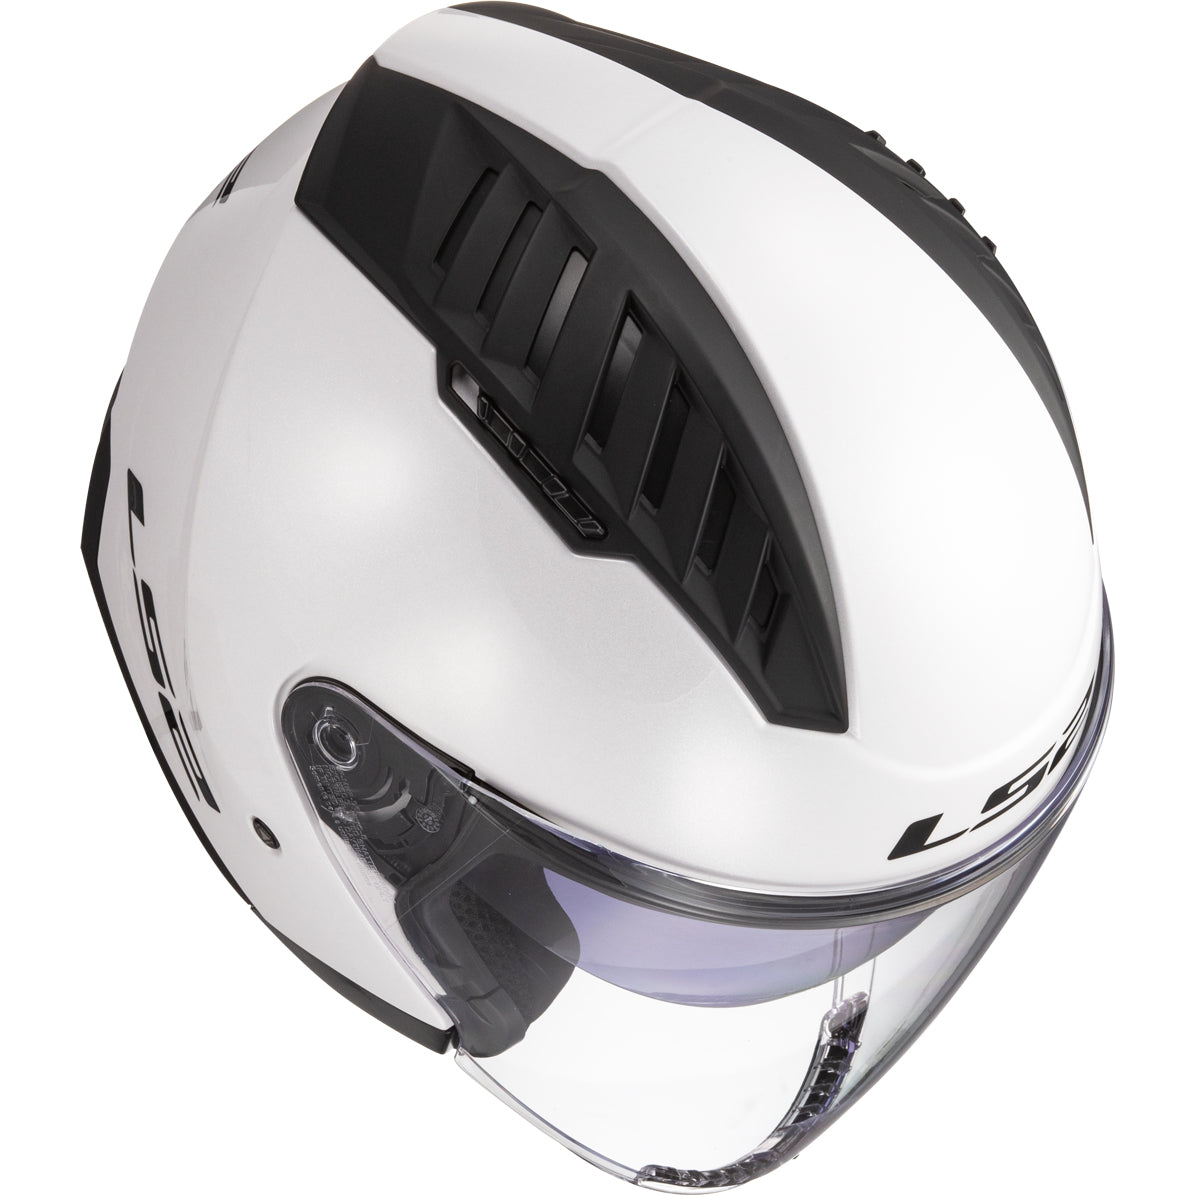 LS2 Helmets Copter Solid Motorcycle Open Face & 3/4 Helmet